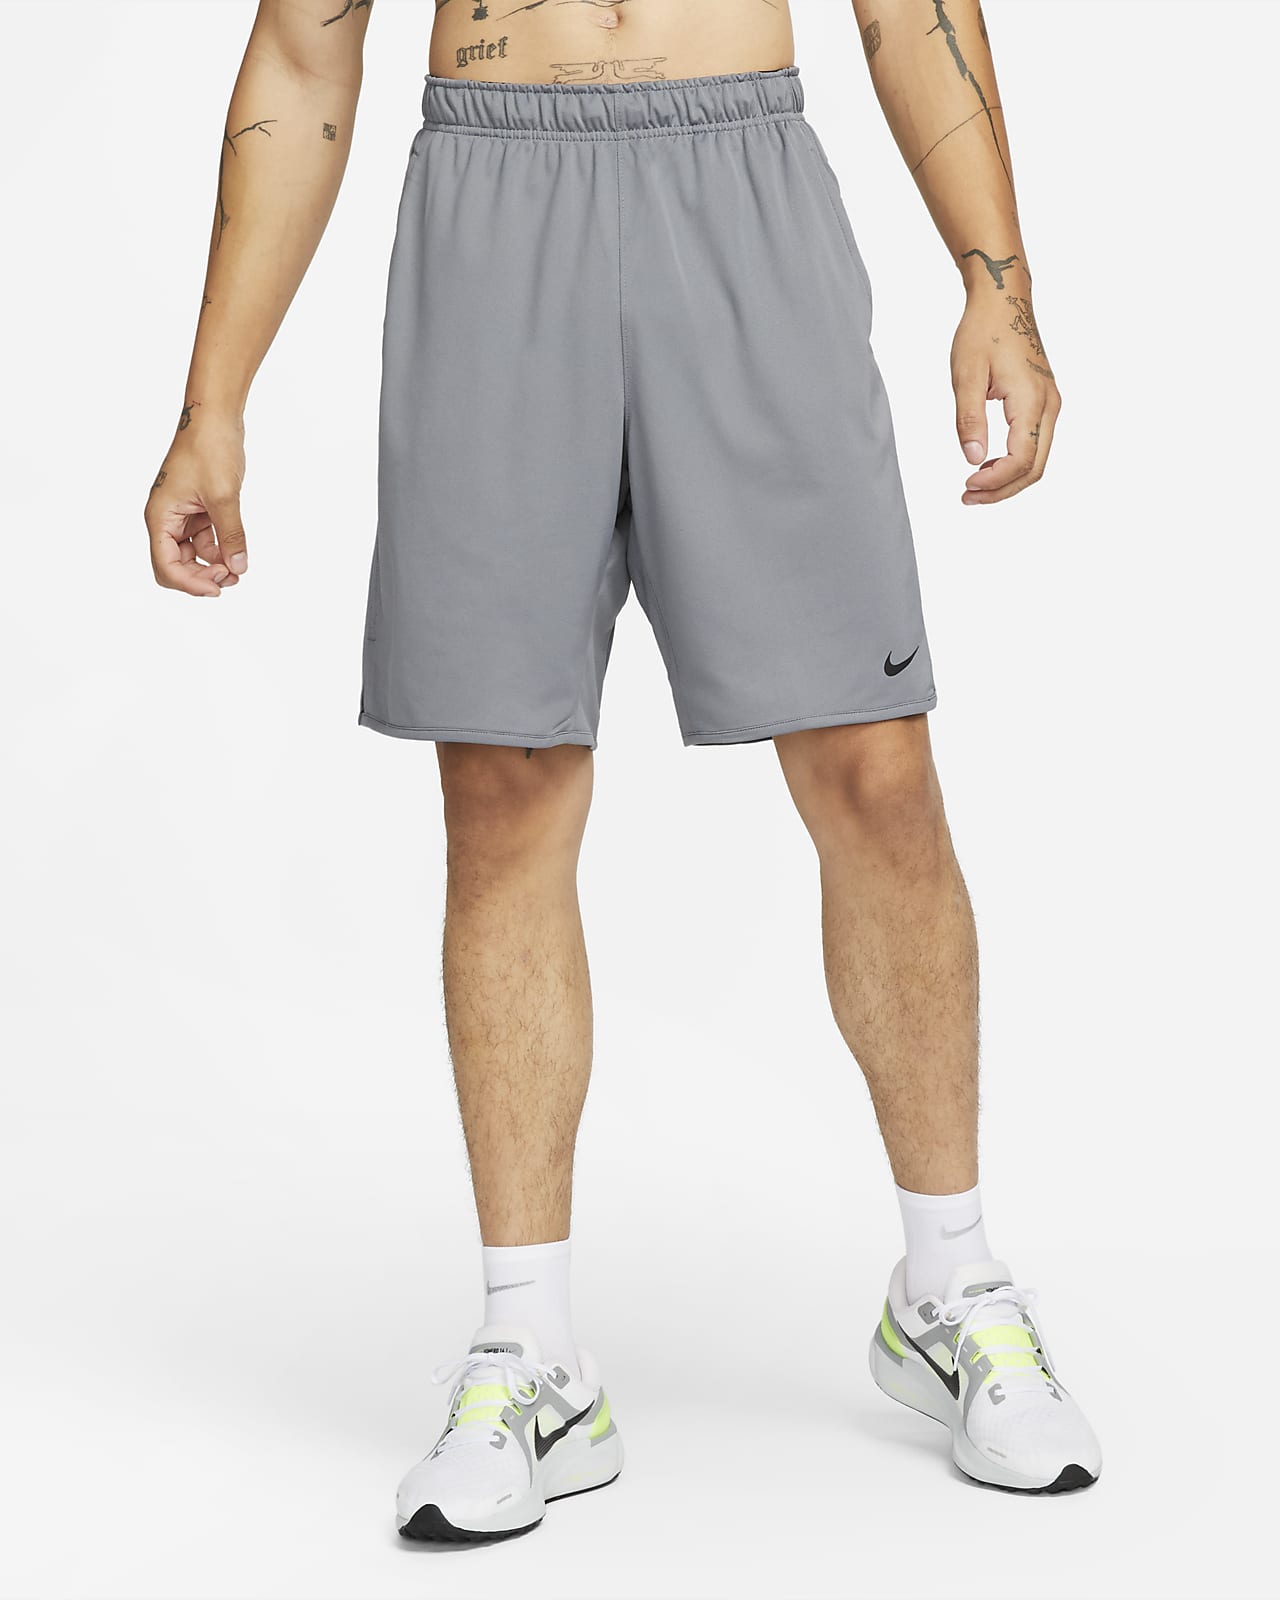 Nike Totality Pantalón corto versátil Dri-FIT de 23 cm sin forro - Hombre